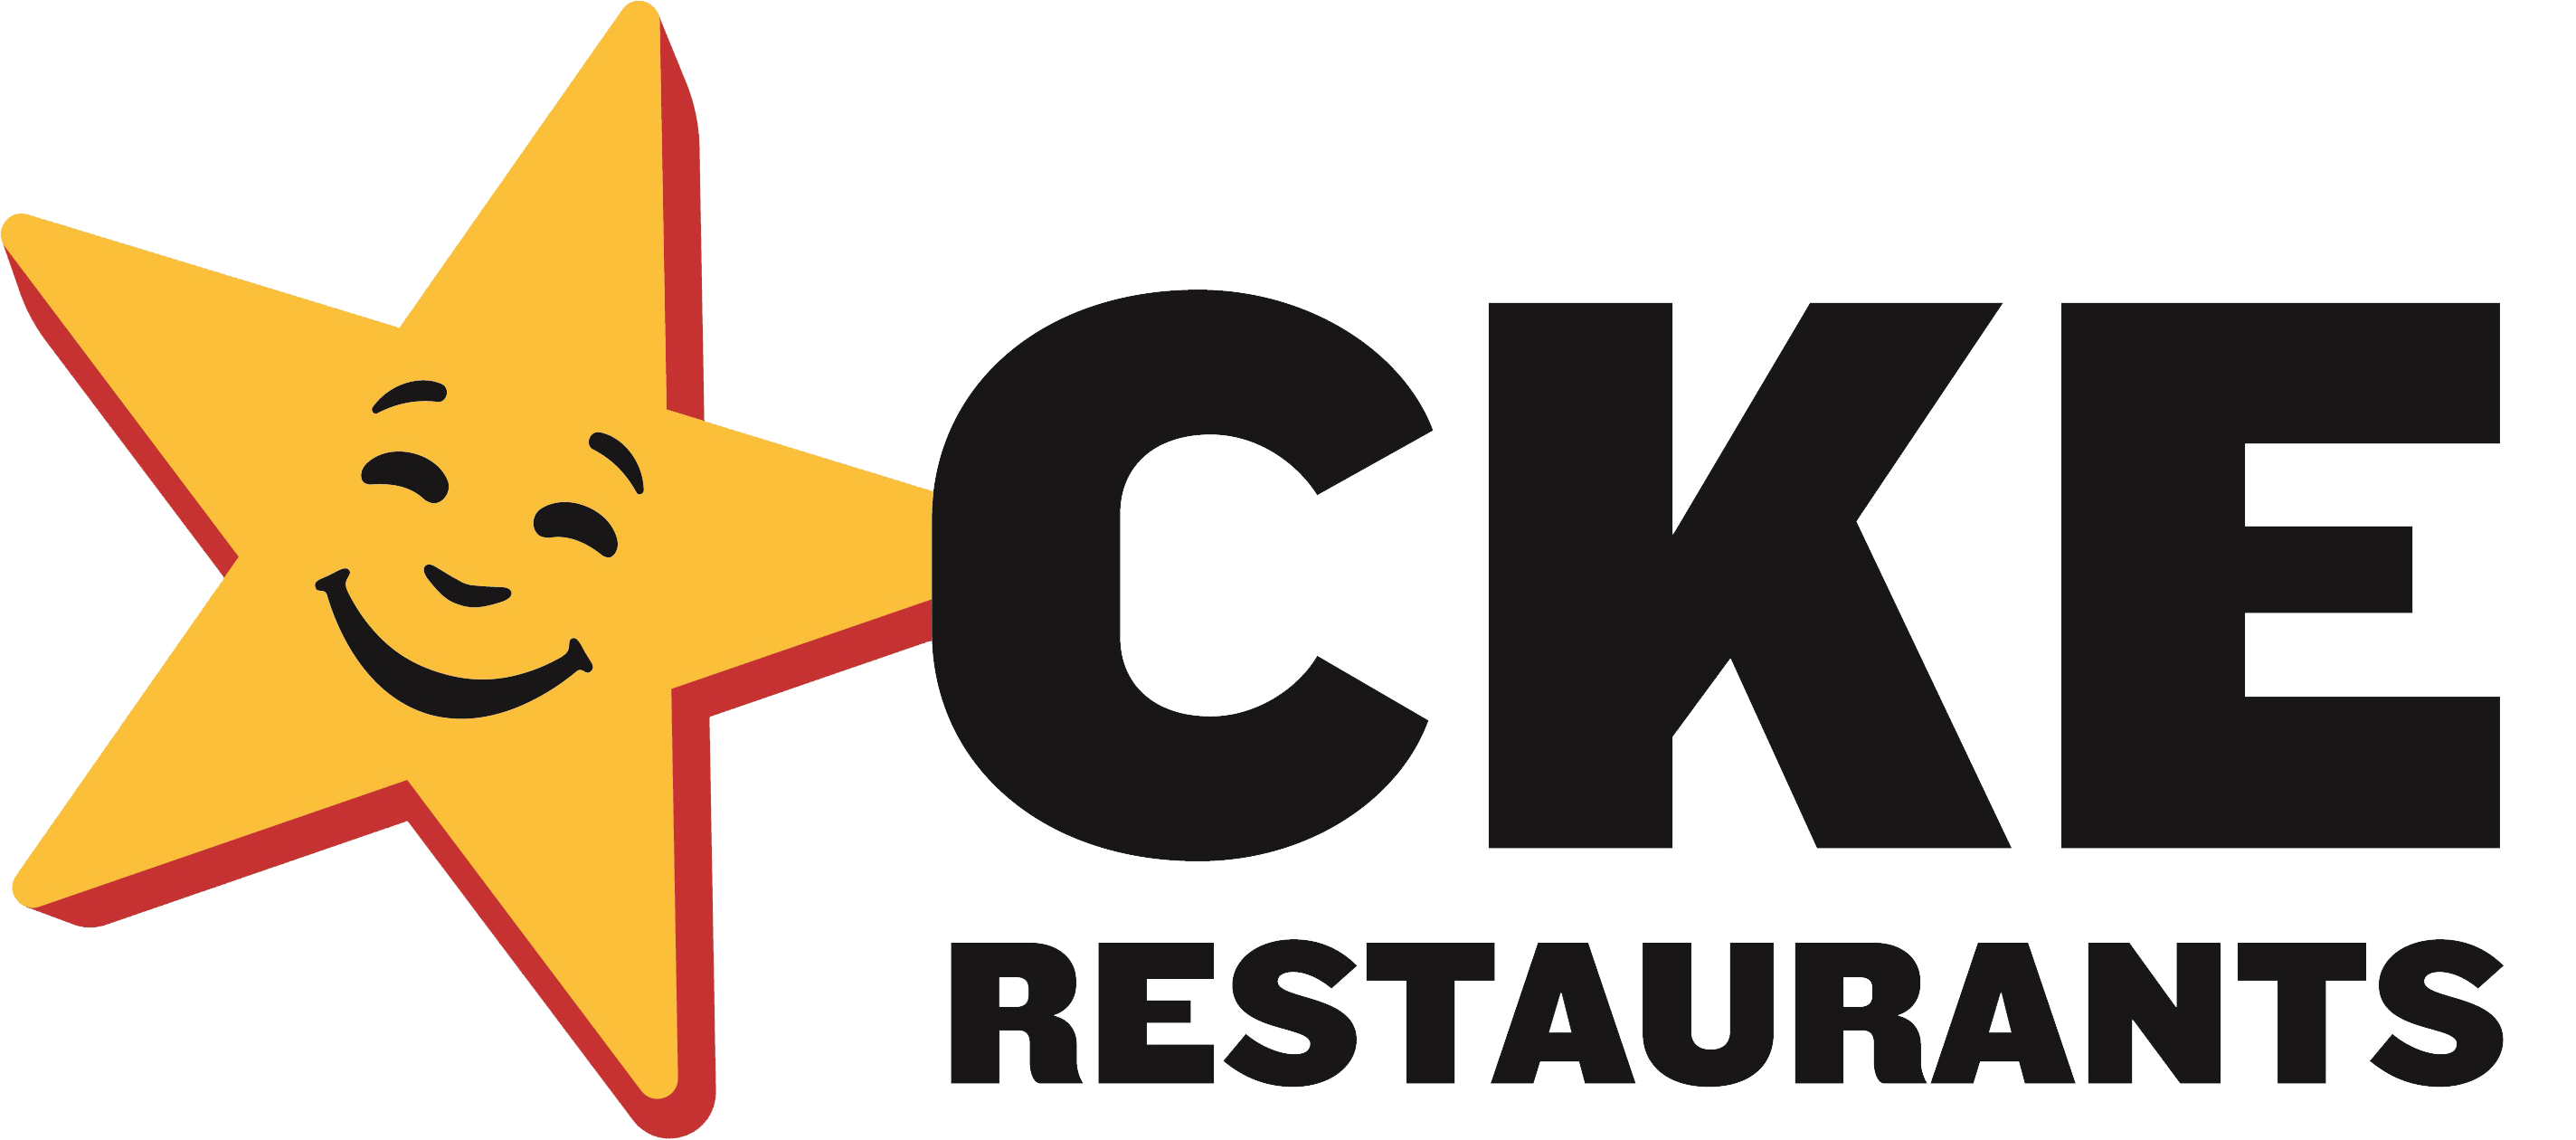 CKE Restaurants  integration